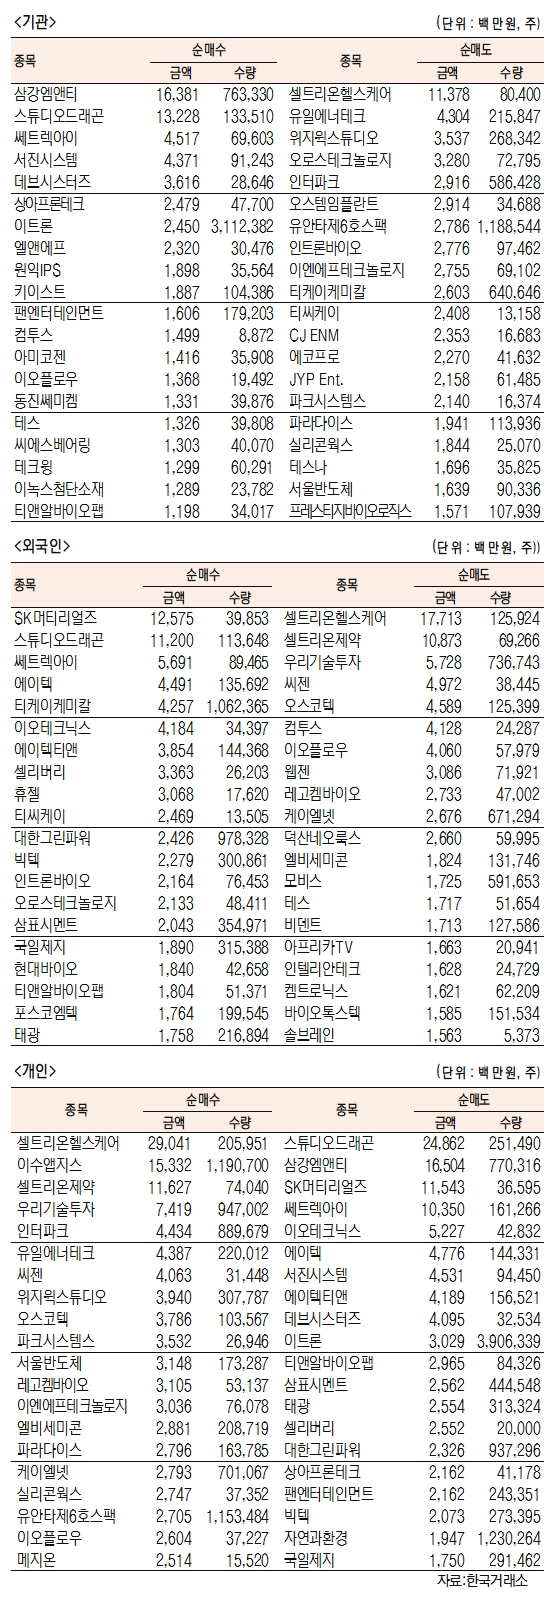 [표]코스닥 기관·외국인·개인 순매수·도 상위종목(3월 29일-최종치)